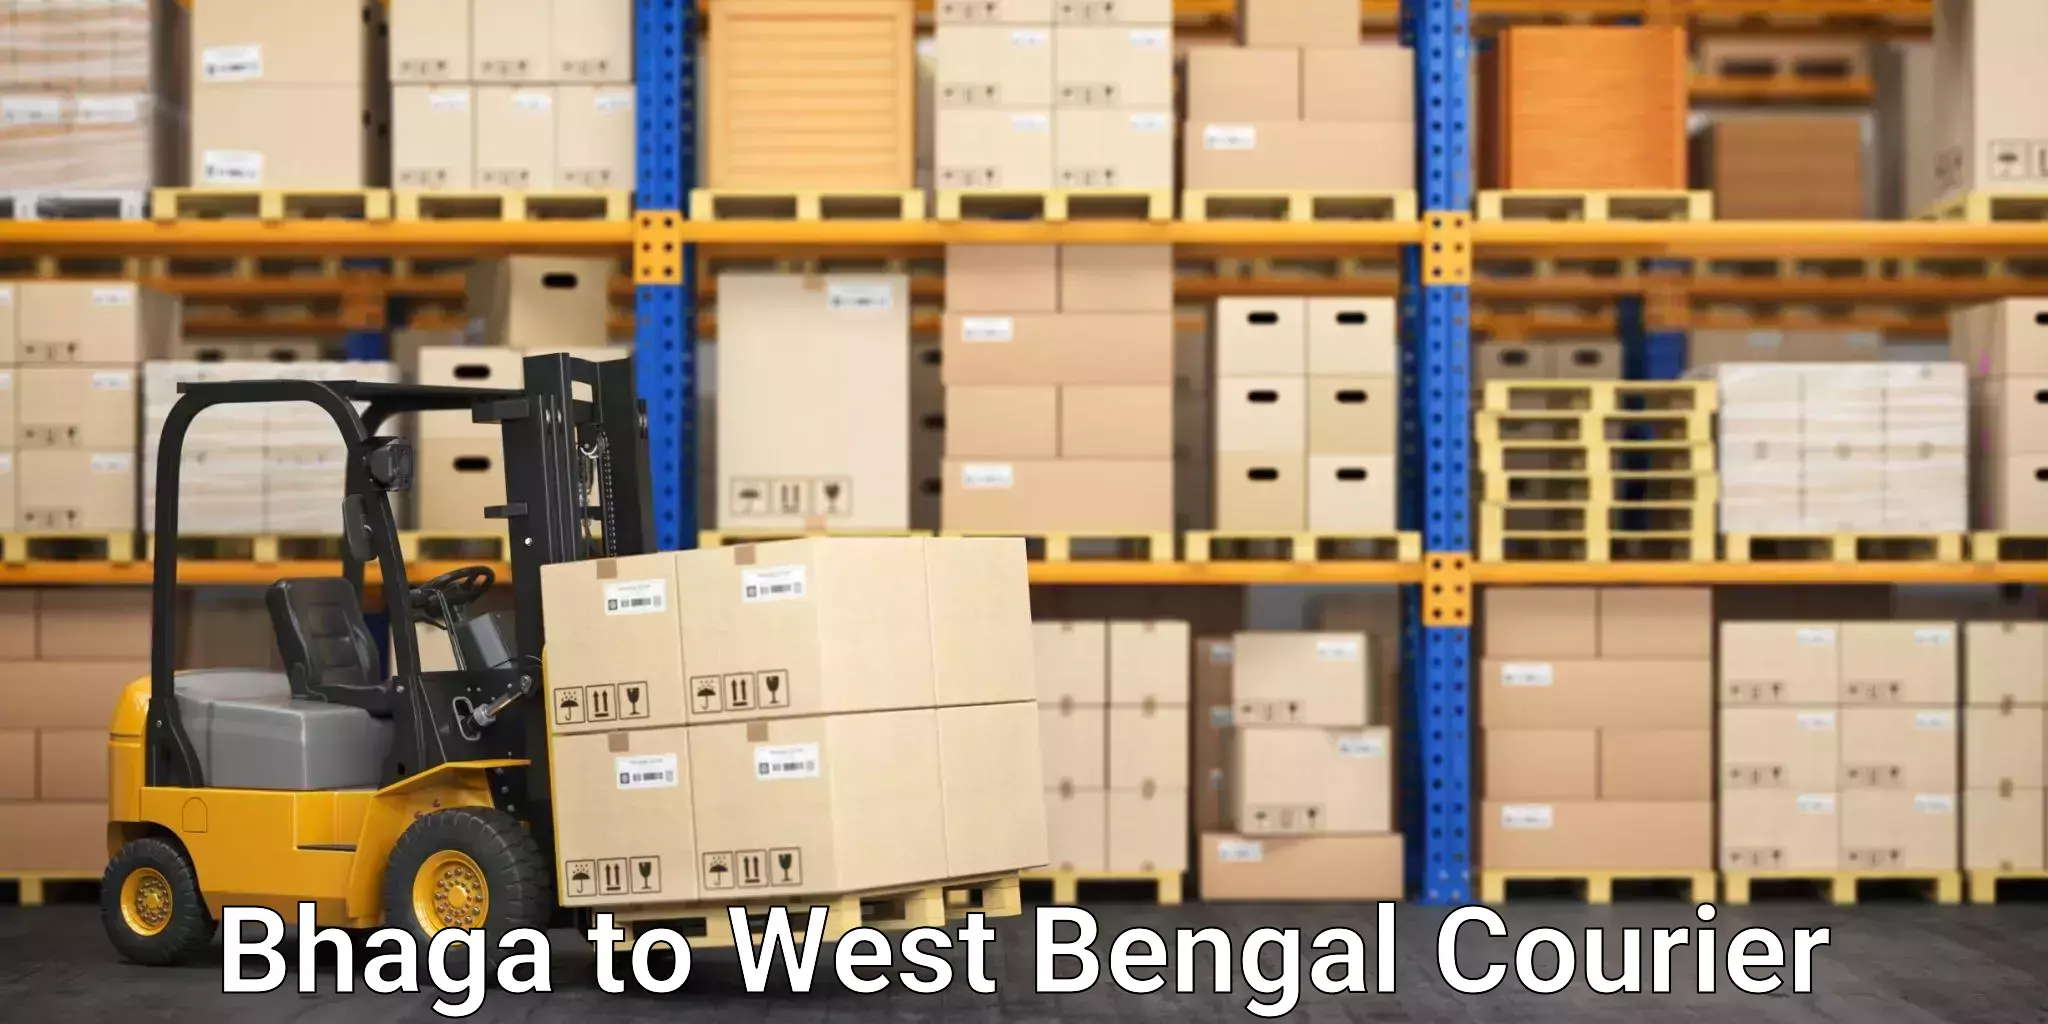 Tracking updates Bhaga to West Bengal